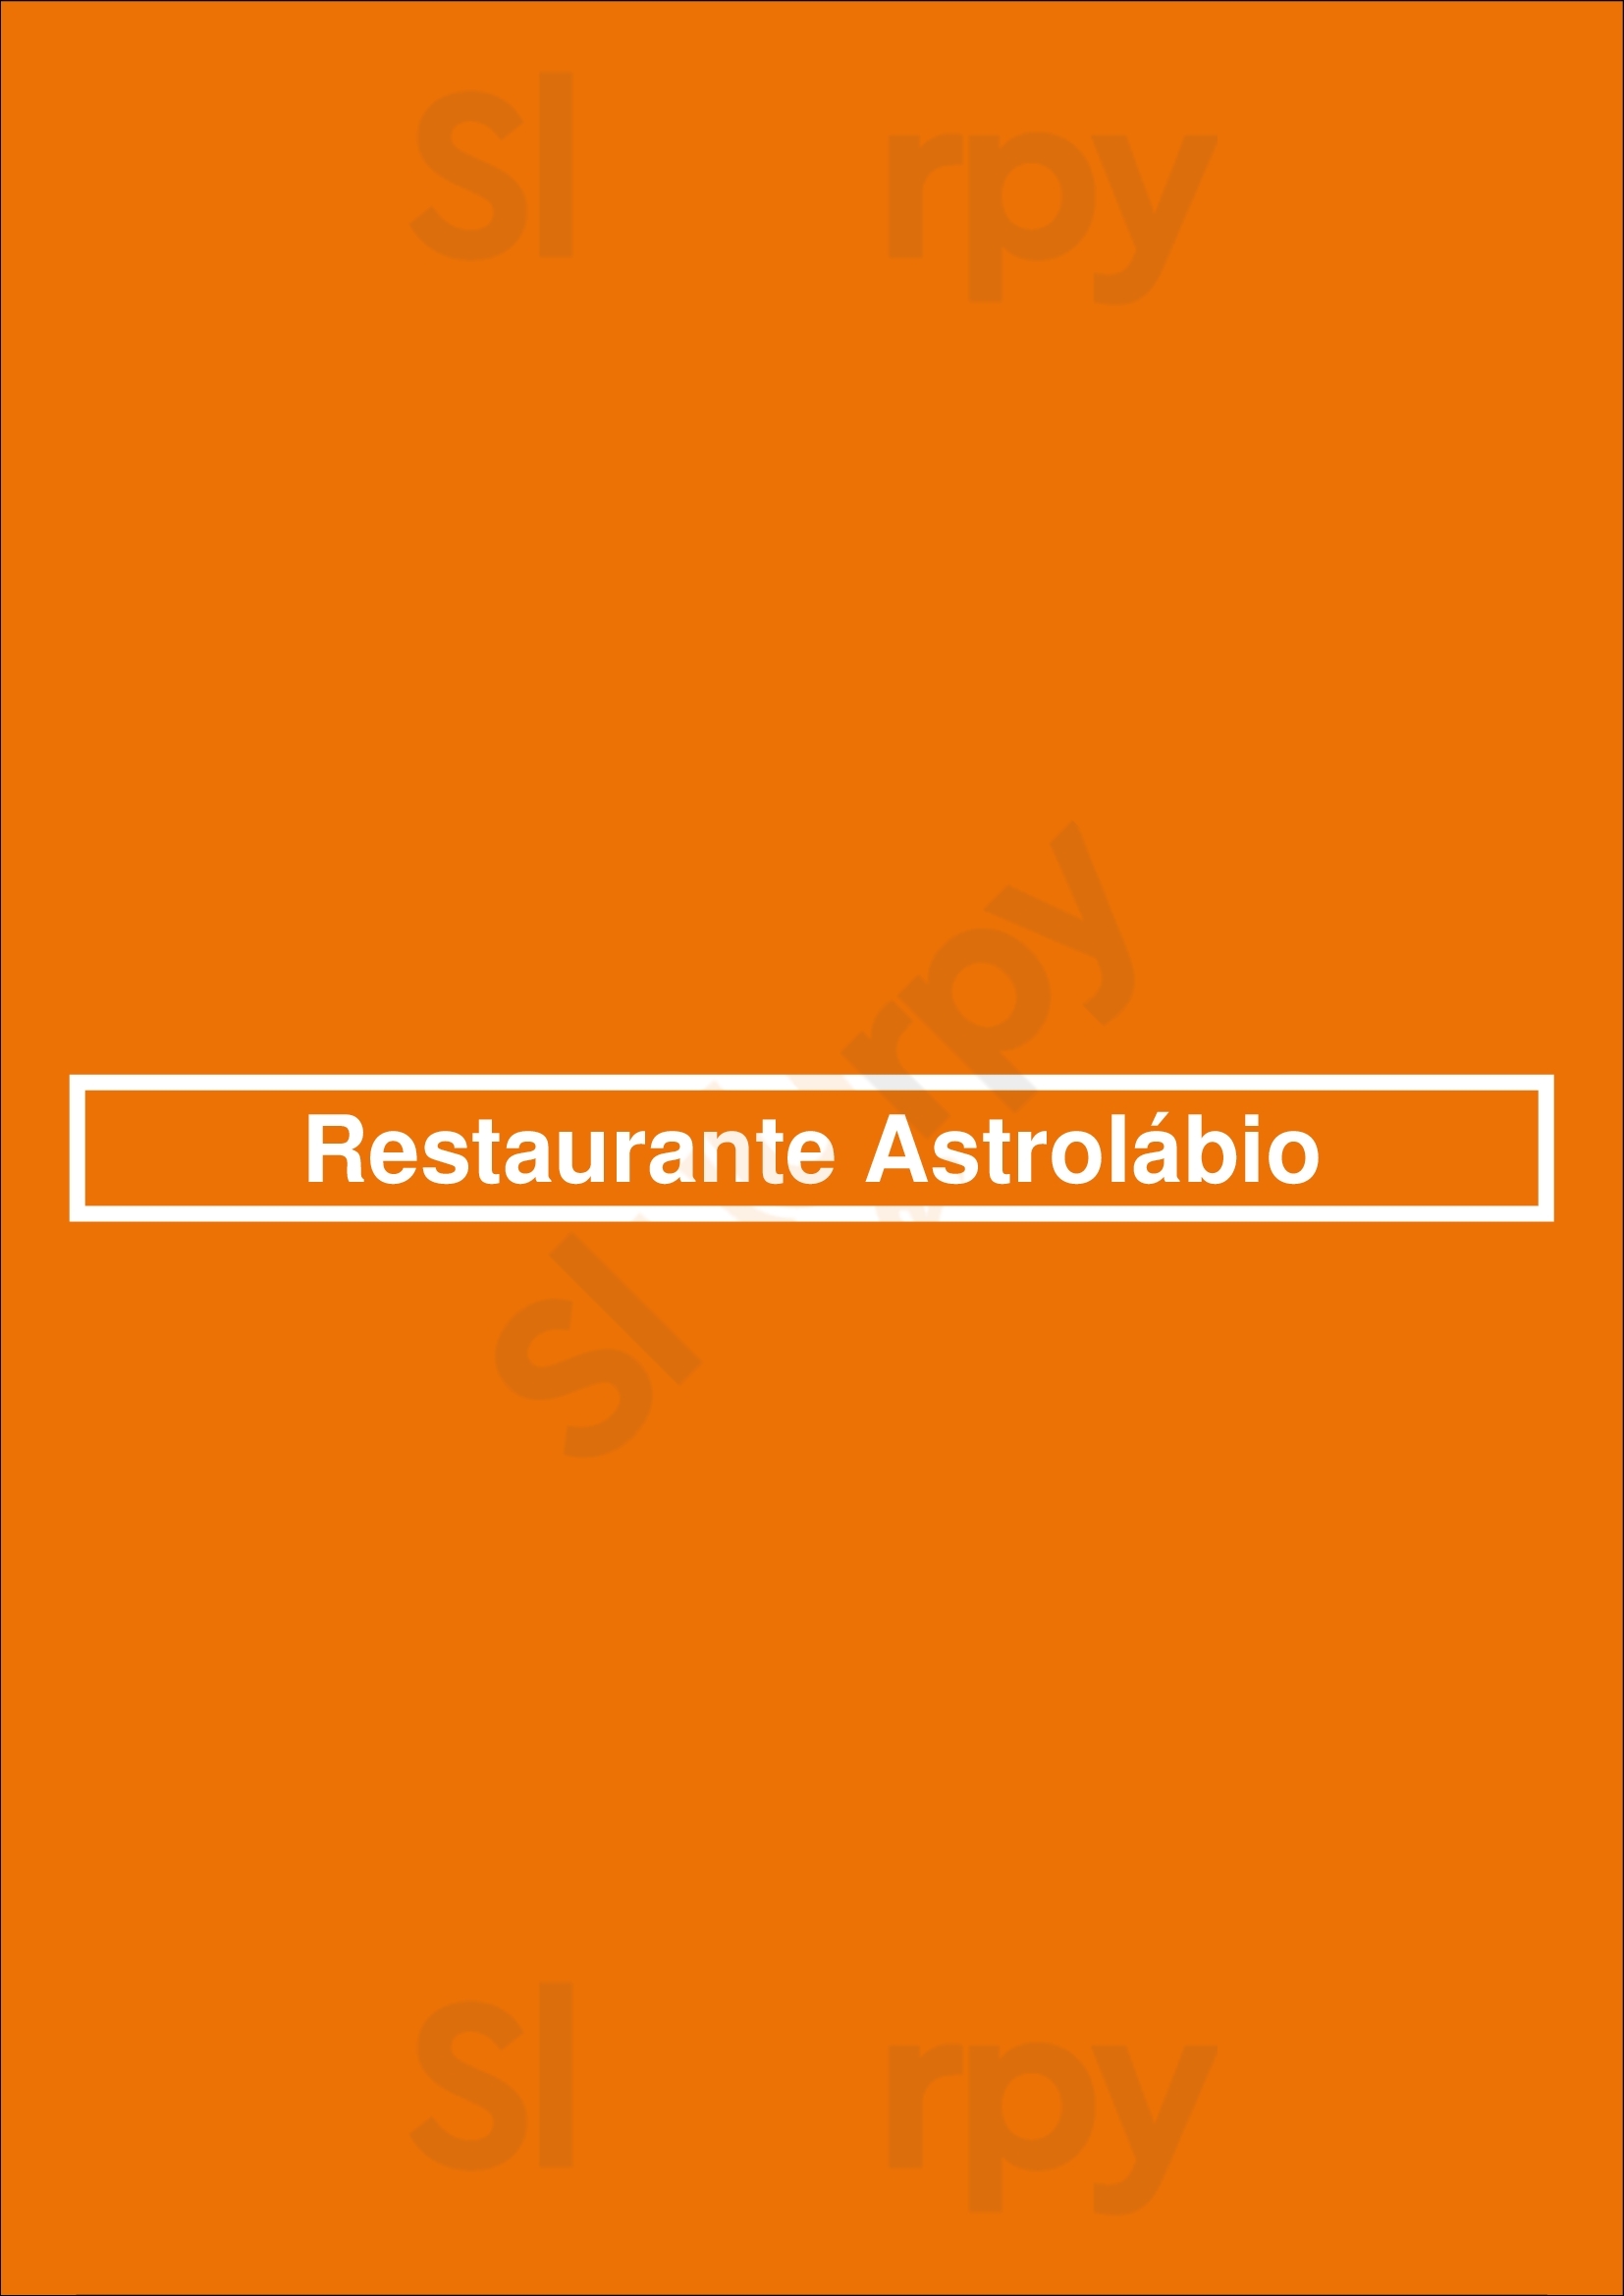 Astrolábio Restaurante & Café Lisboa Menu - 1